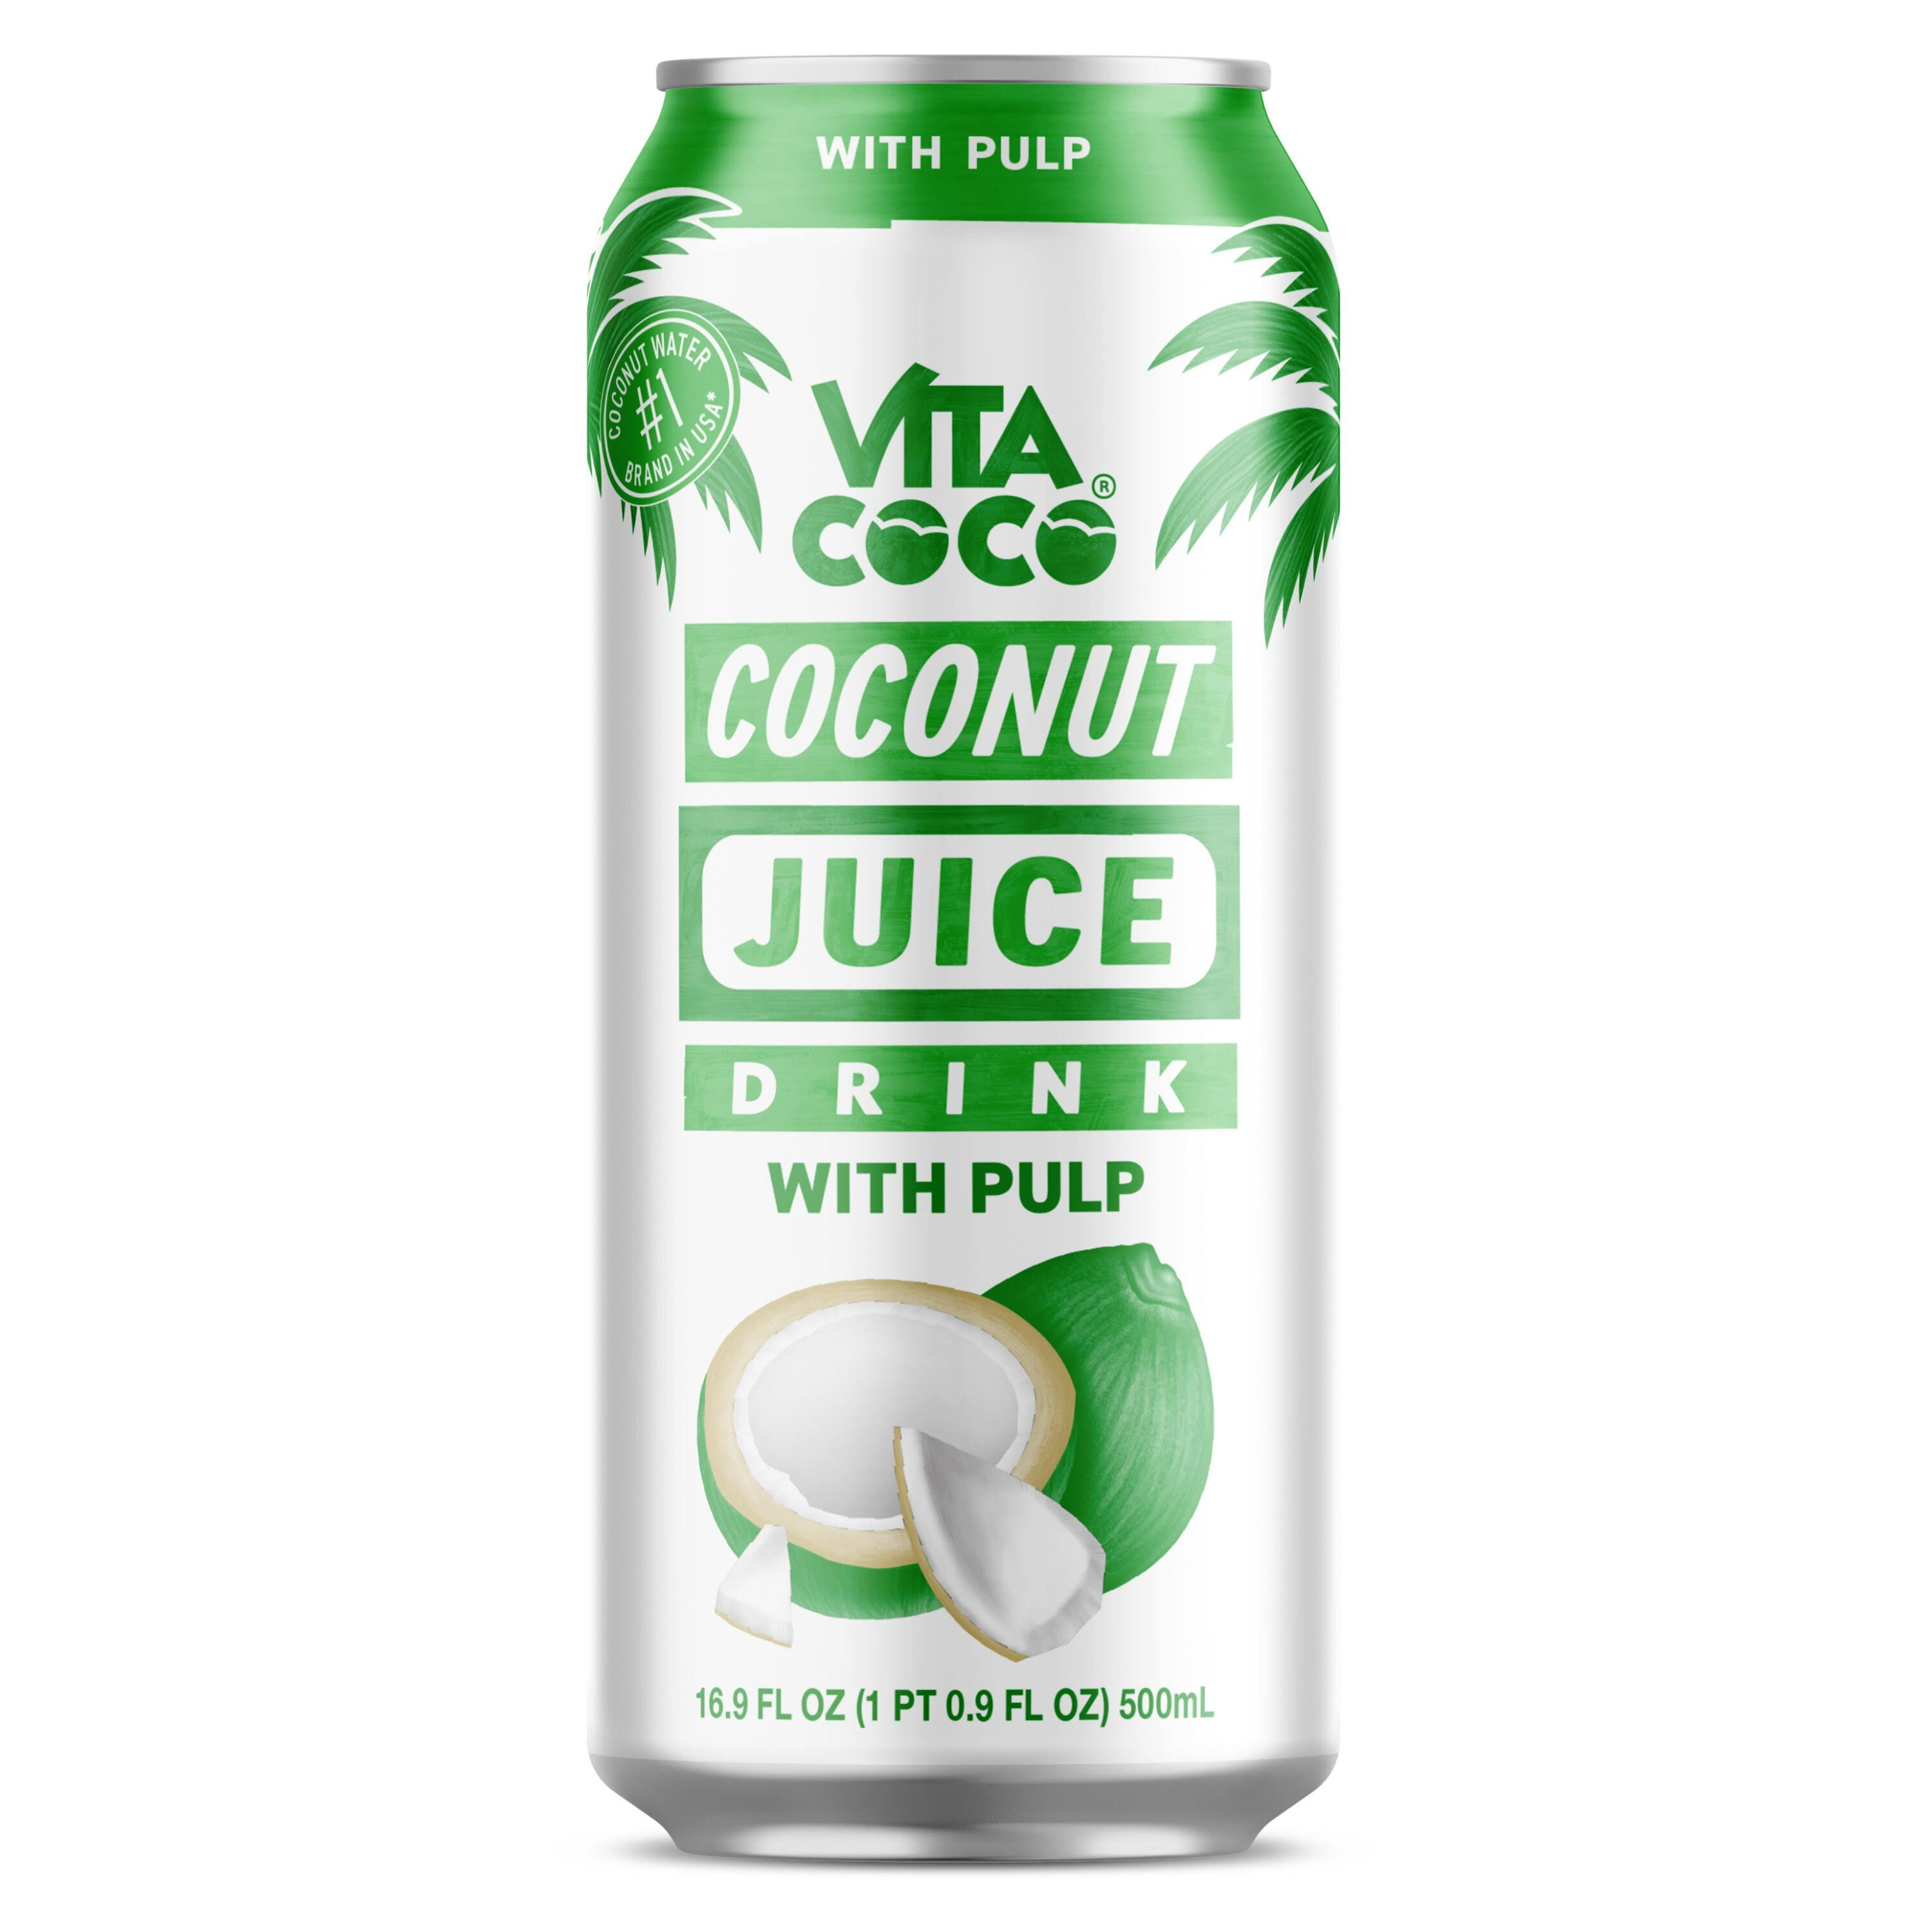 Vita Coco Coconut Juice Drink with Pulp 16.9 oz